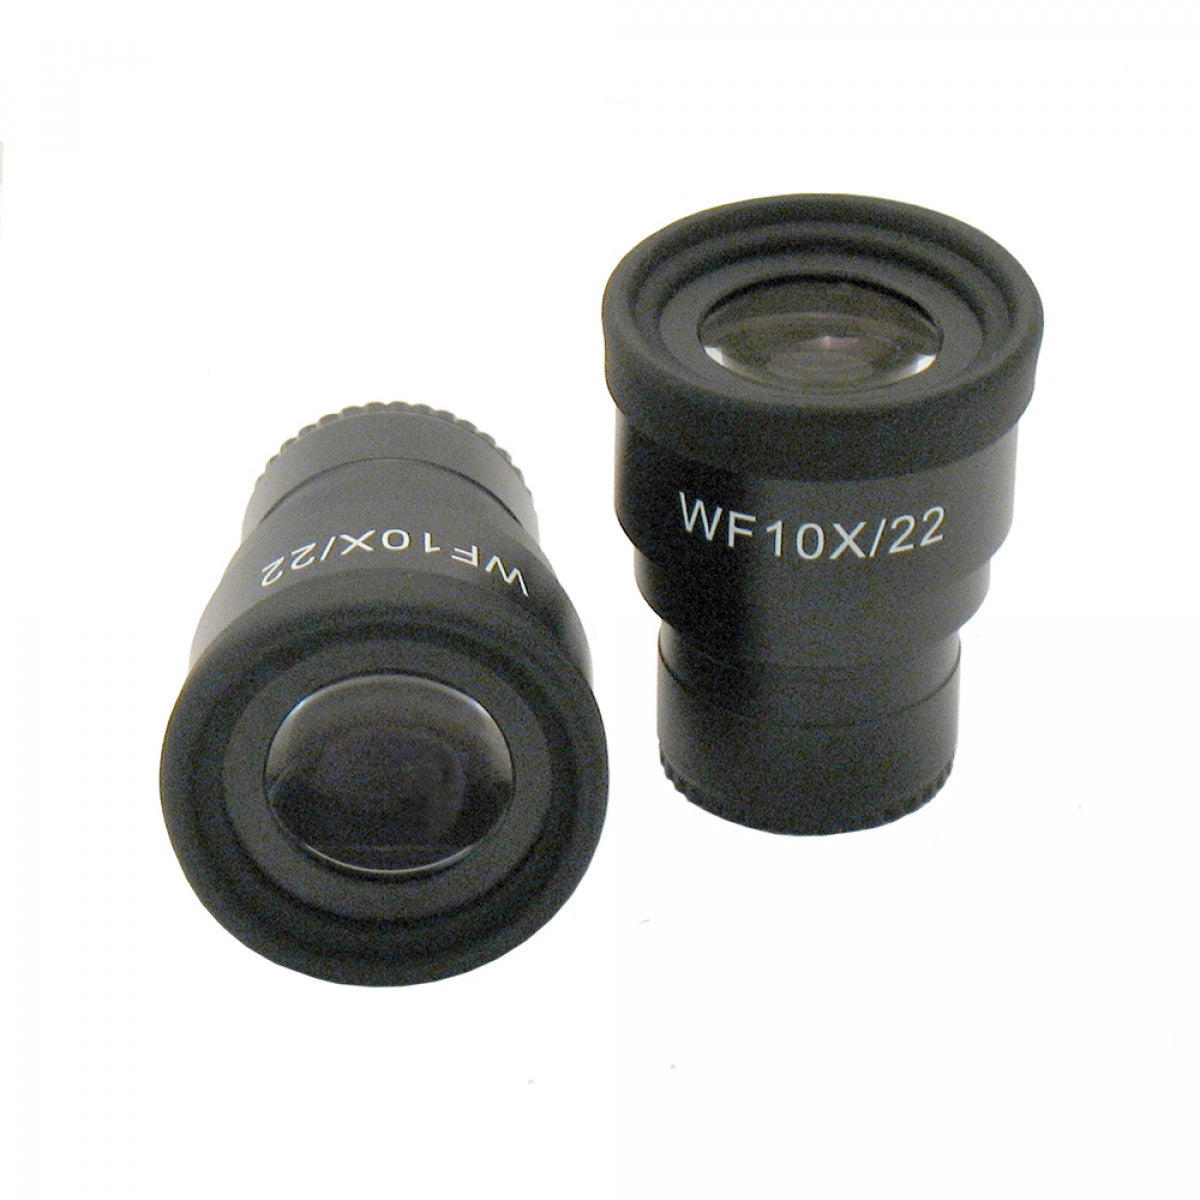 Unitron Microscope WF20x/12mm Focusing Eyepiece for Z645